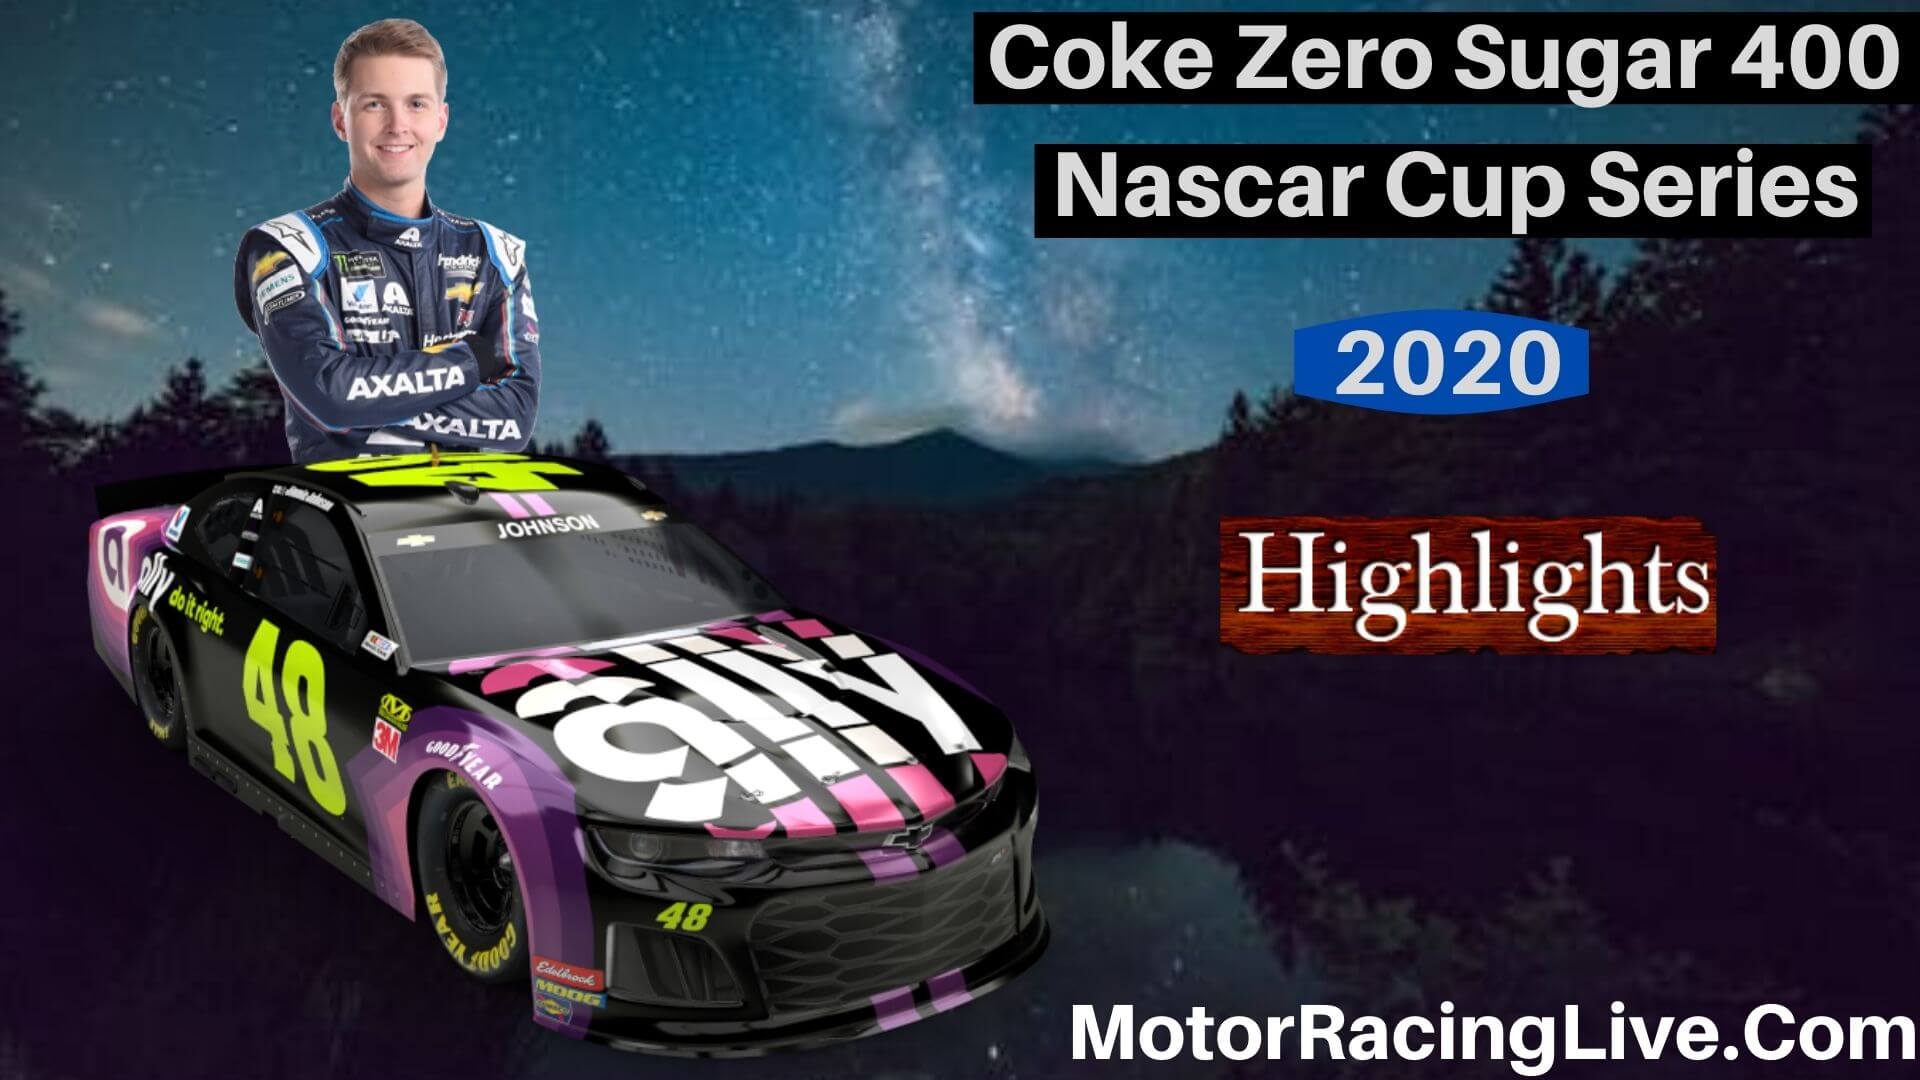 Coke Zero Sugar 400 Highlights Nascar Cup Series 2020